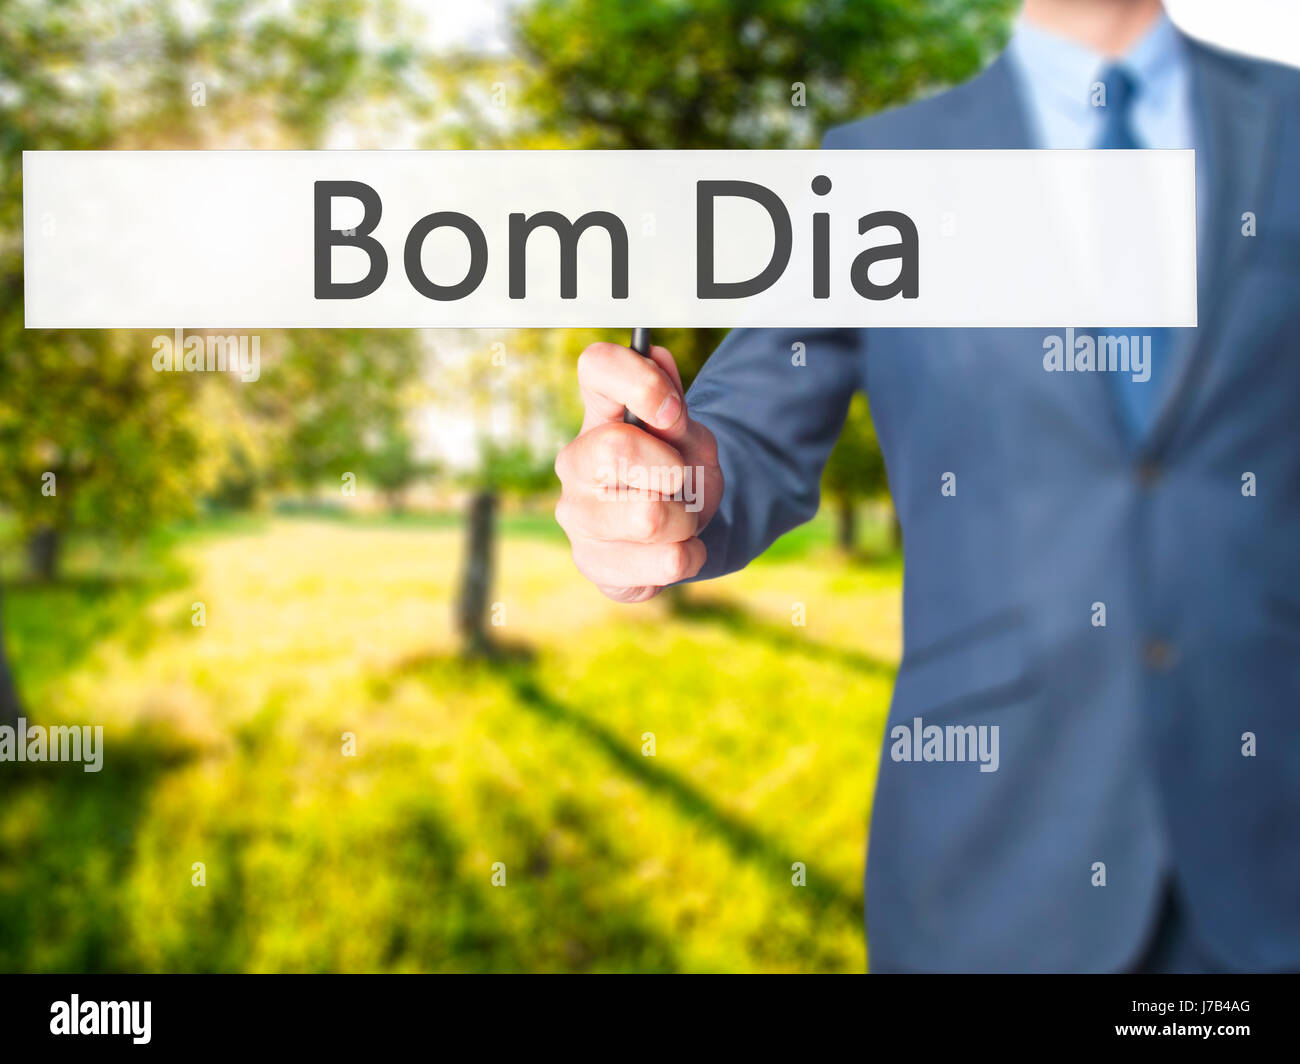 Bom Dia (In Portugiesisch - guten Morgen) - Geschäftsmann Hand mit Schild.  Wirtschaft, Technologie, Internet-Konzept. Stock Foto Stockfotografie -  Alamy